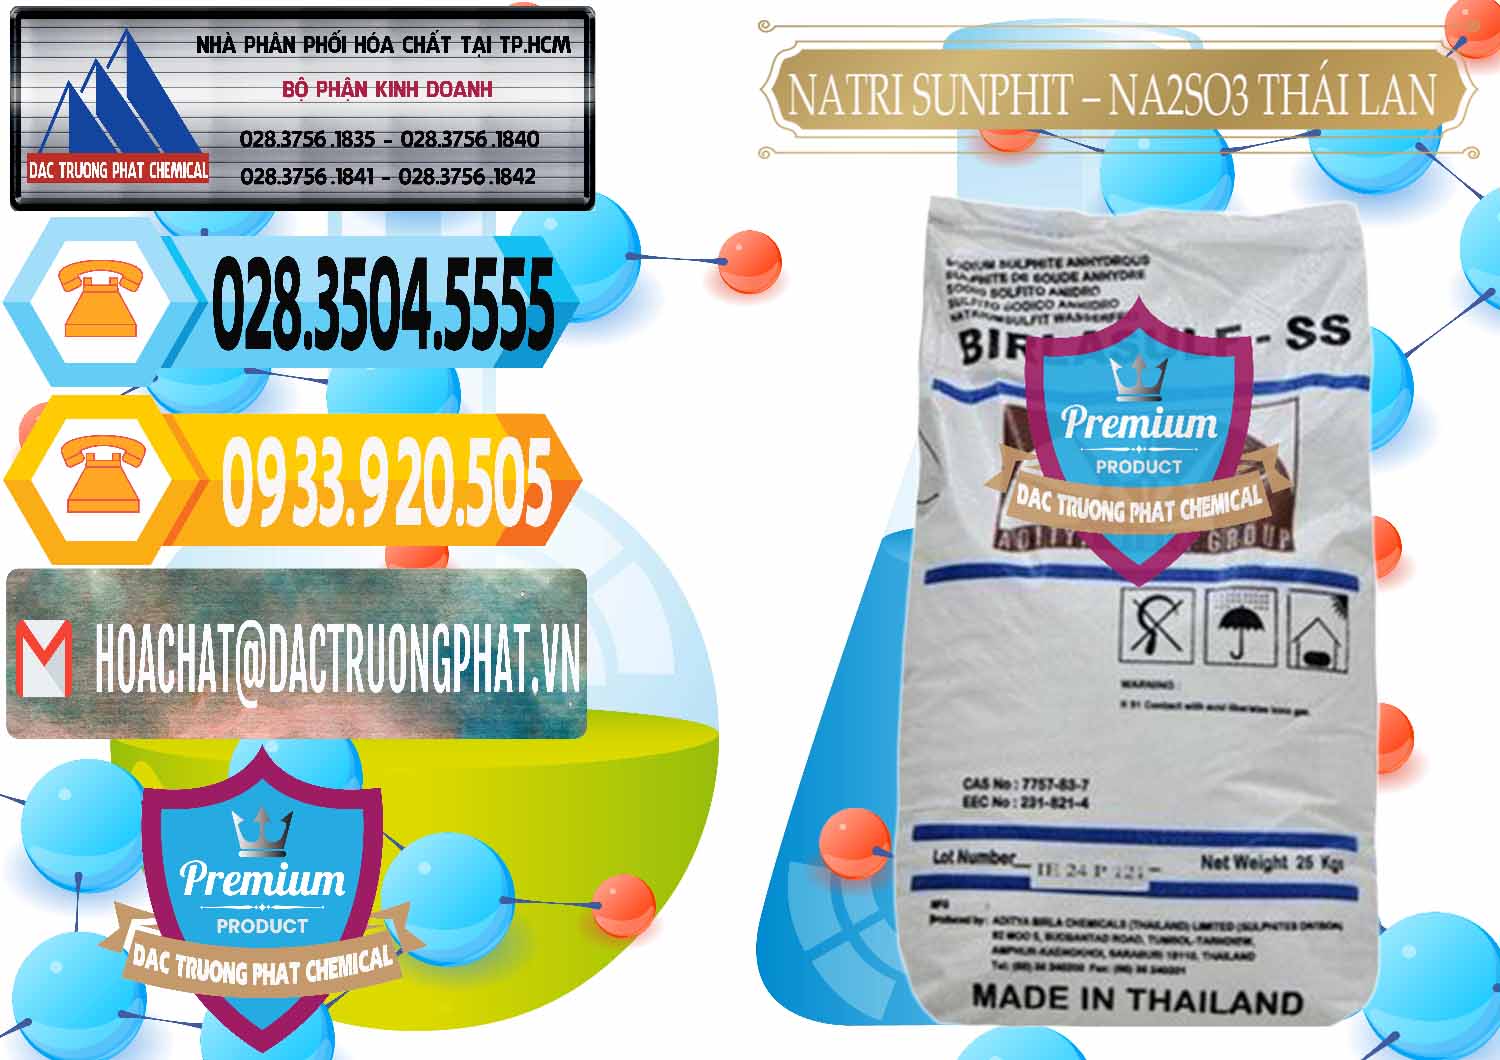 Cty cung cấp & bán Natri Sunphit - NA2SO3 Thái Lan - 0105 - Nơi cung cấp & bán hóa chất tại TP.HCM - hoachattayrua.net